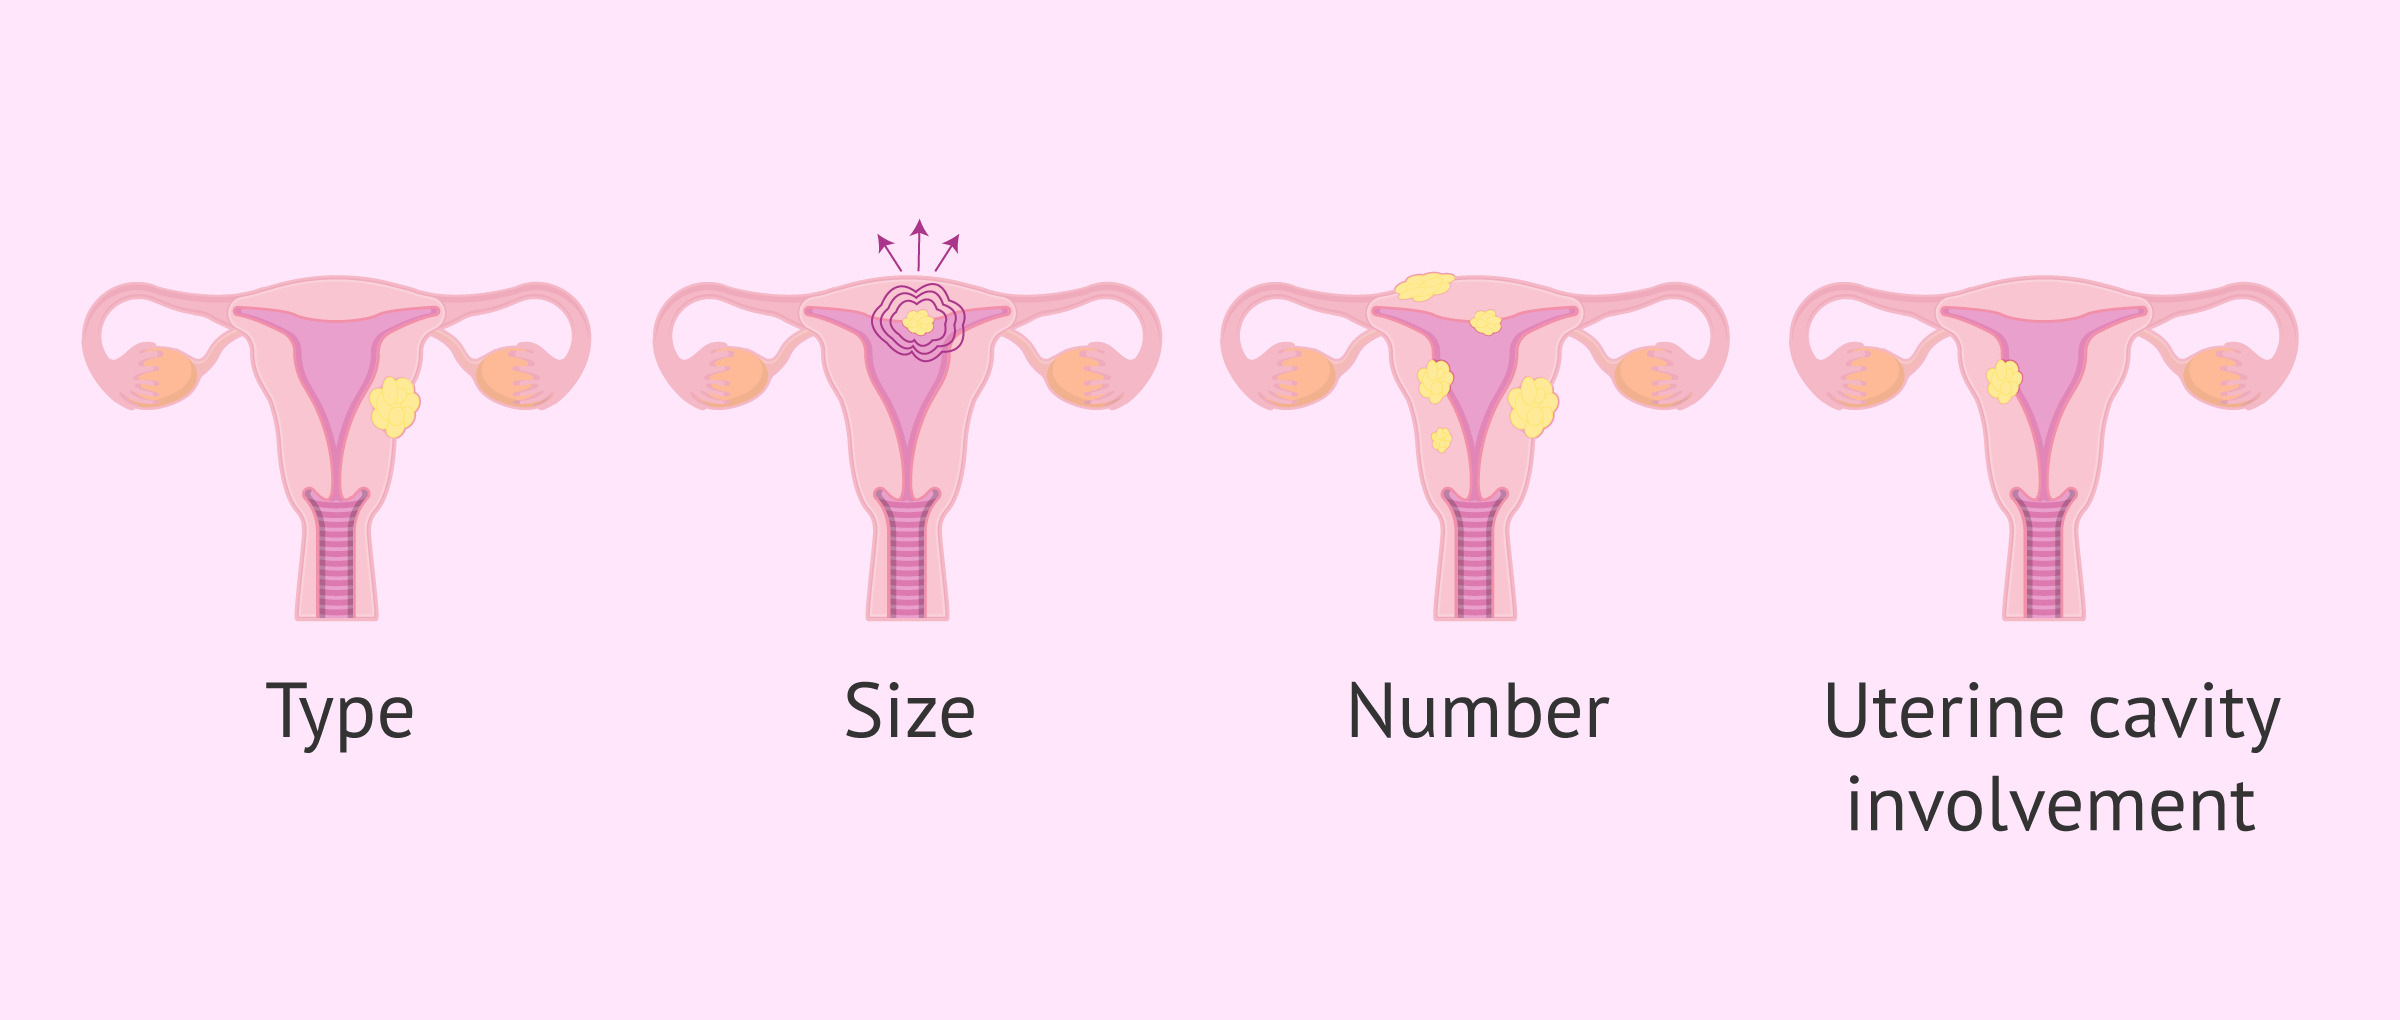 Do uterine fibroids affect IVF?